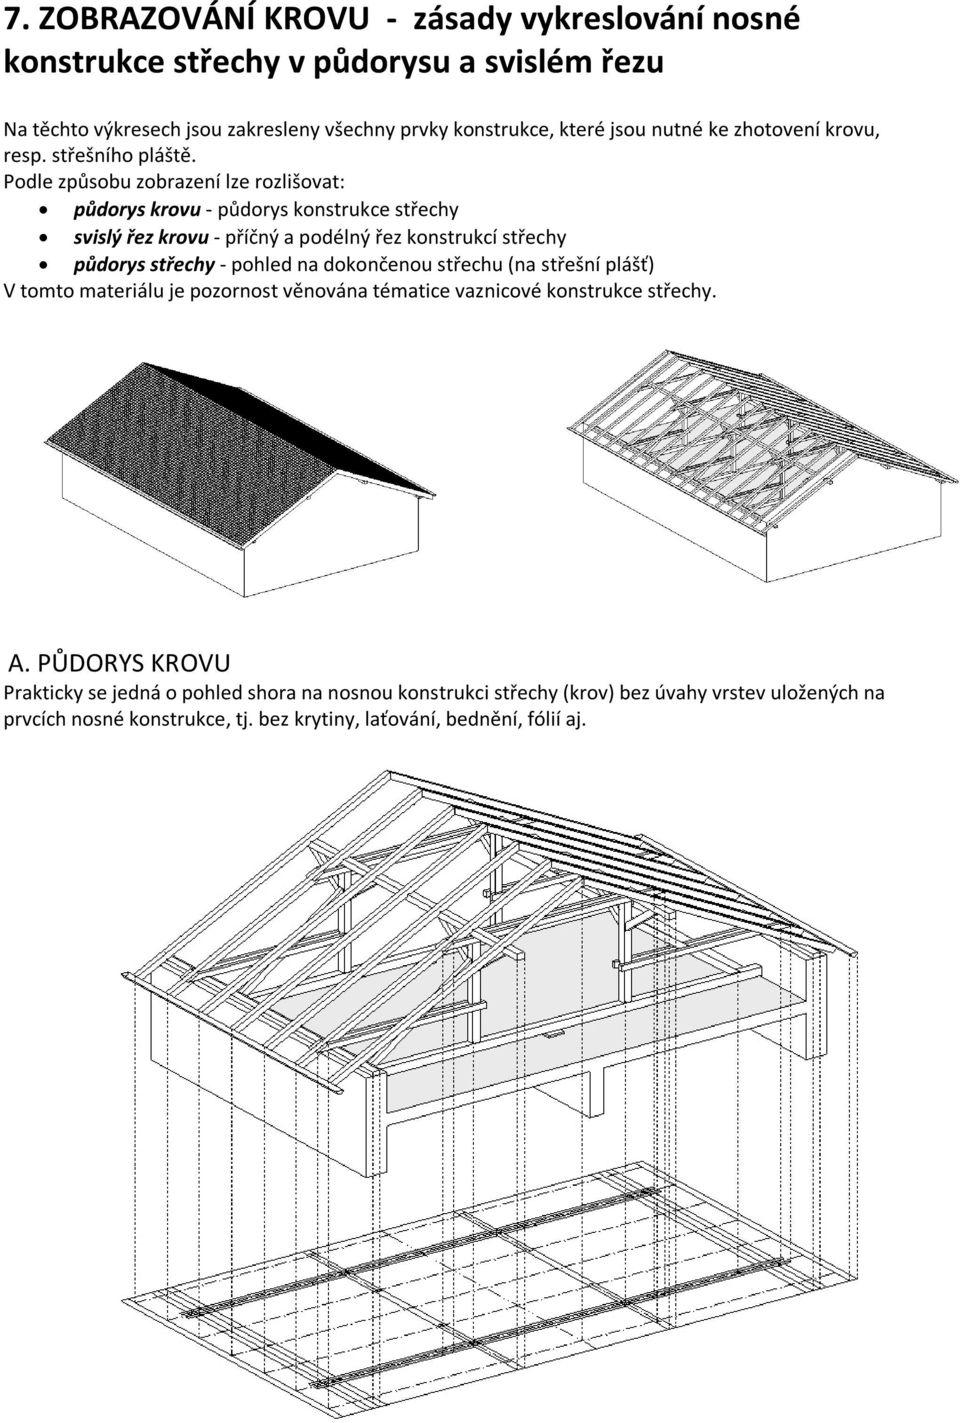 Podle způsobu zobrazení lze rozlišovat: půdorys krovu - půdorys konstrukce střechy svislý řez krovu - příčný a podélný řez konstrukcí střechy půdorys střechy - pohled na